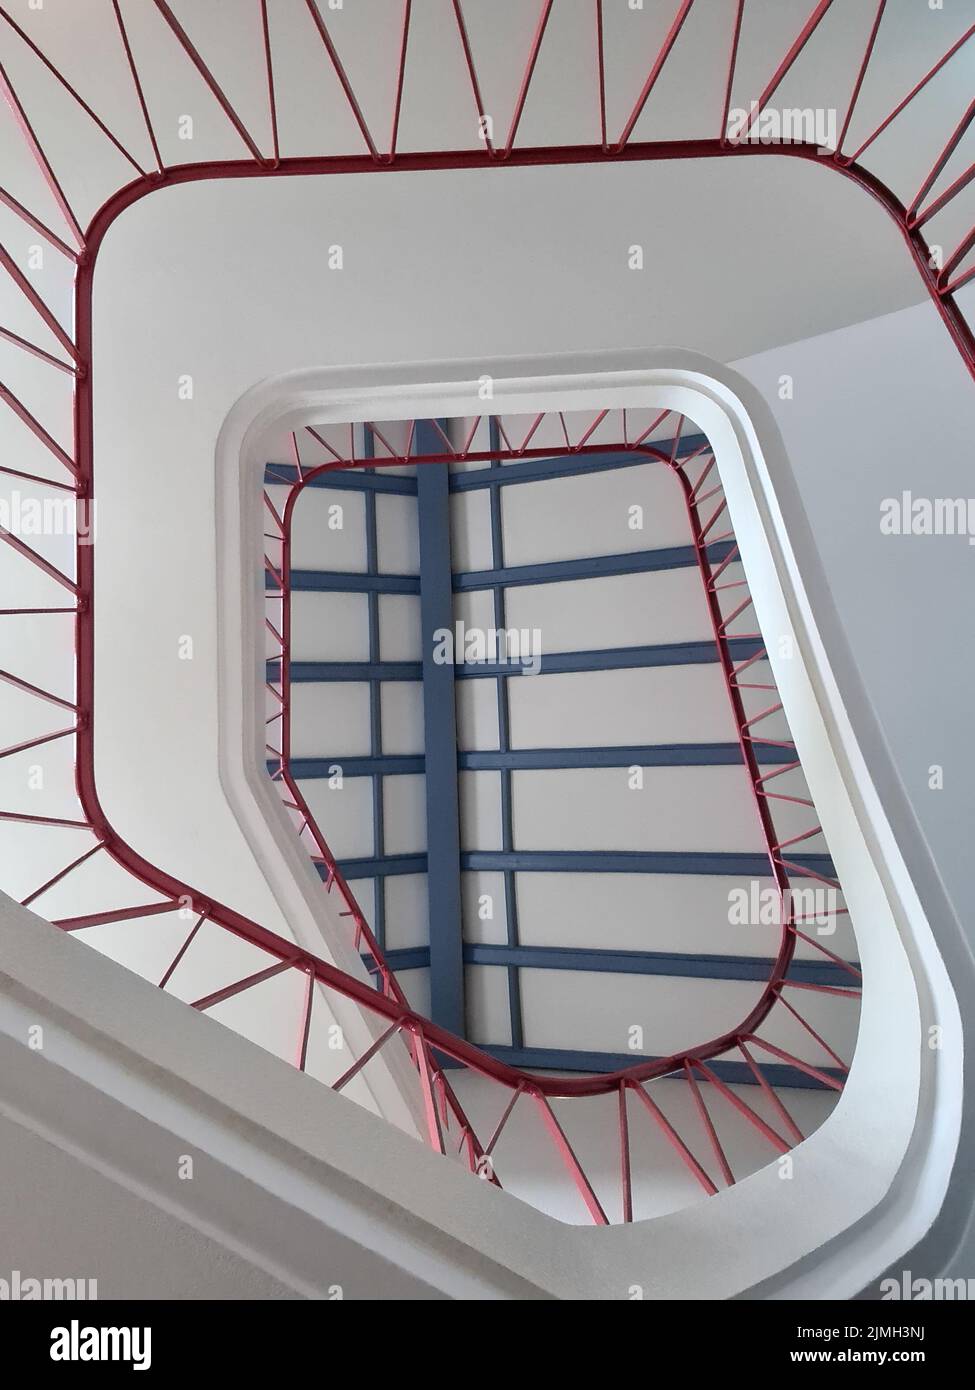 Escalier sinueux, escalier rouge bleu Banque D'Images